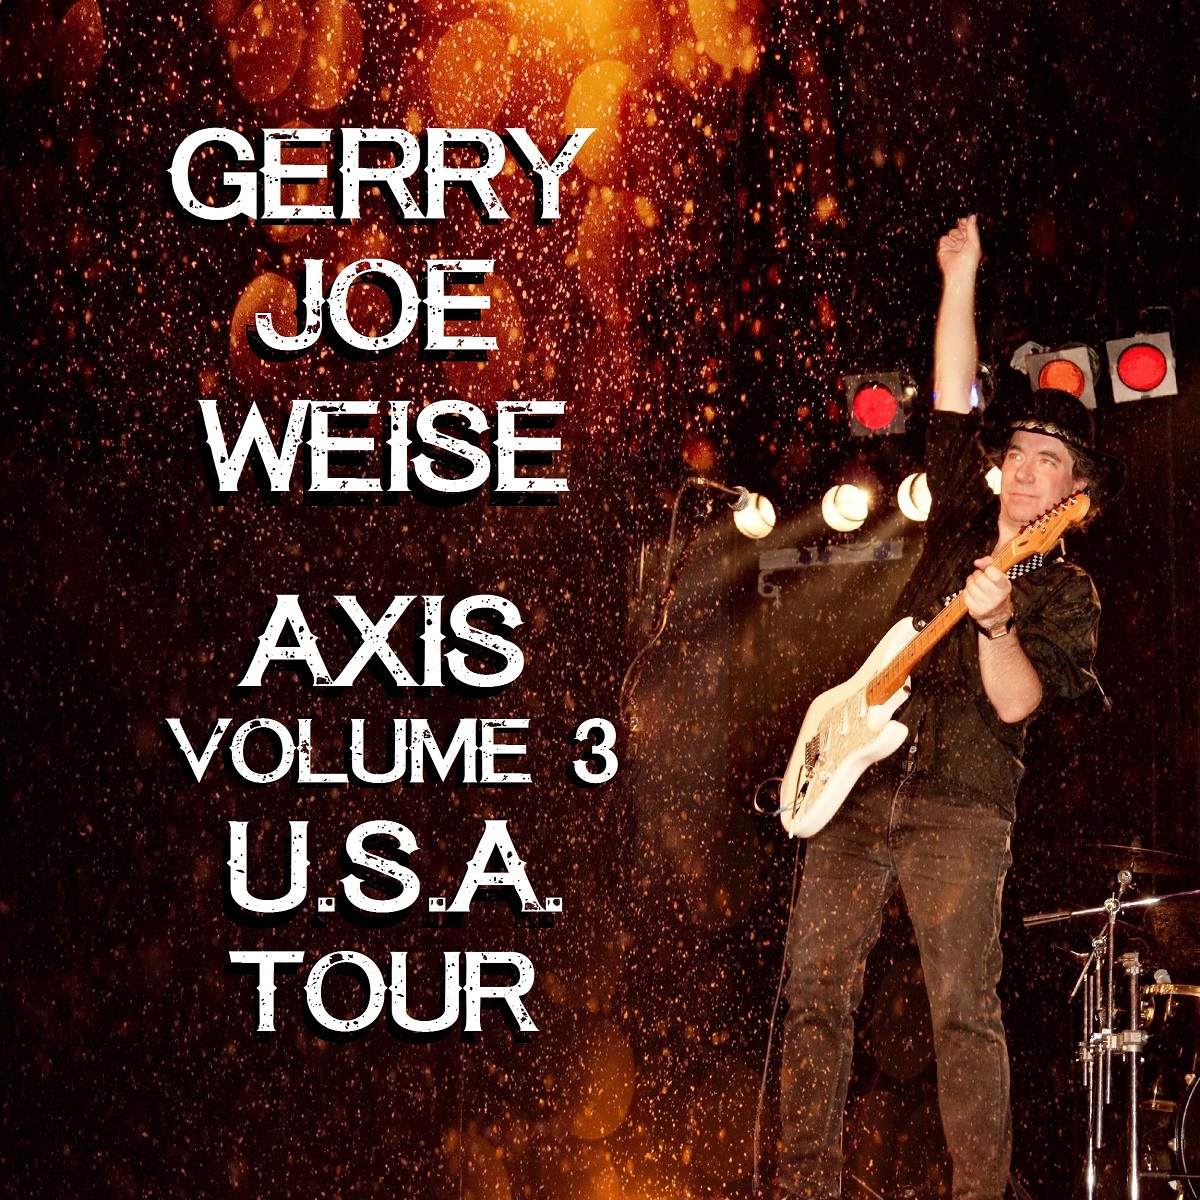 Axis Volume 3 USA Tour